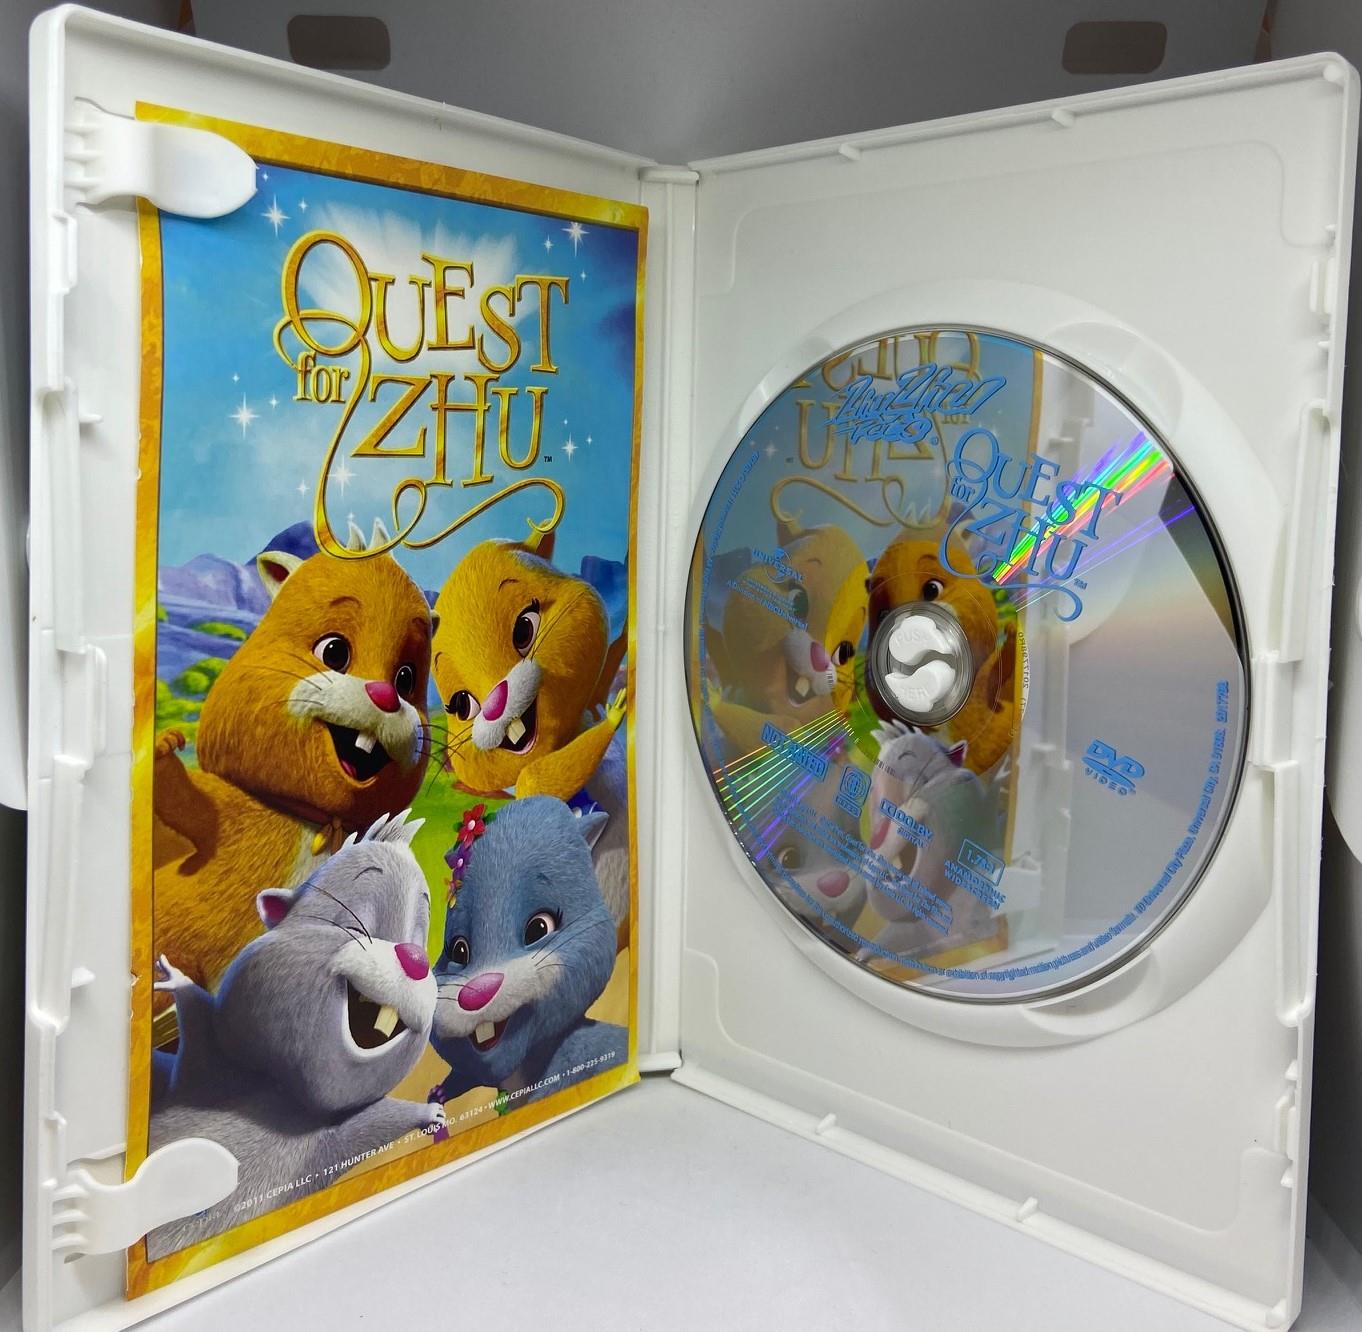 ZhuZhu Pets: Quest for Zhu (DVD, 2011) | eBay